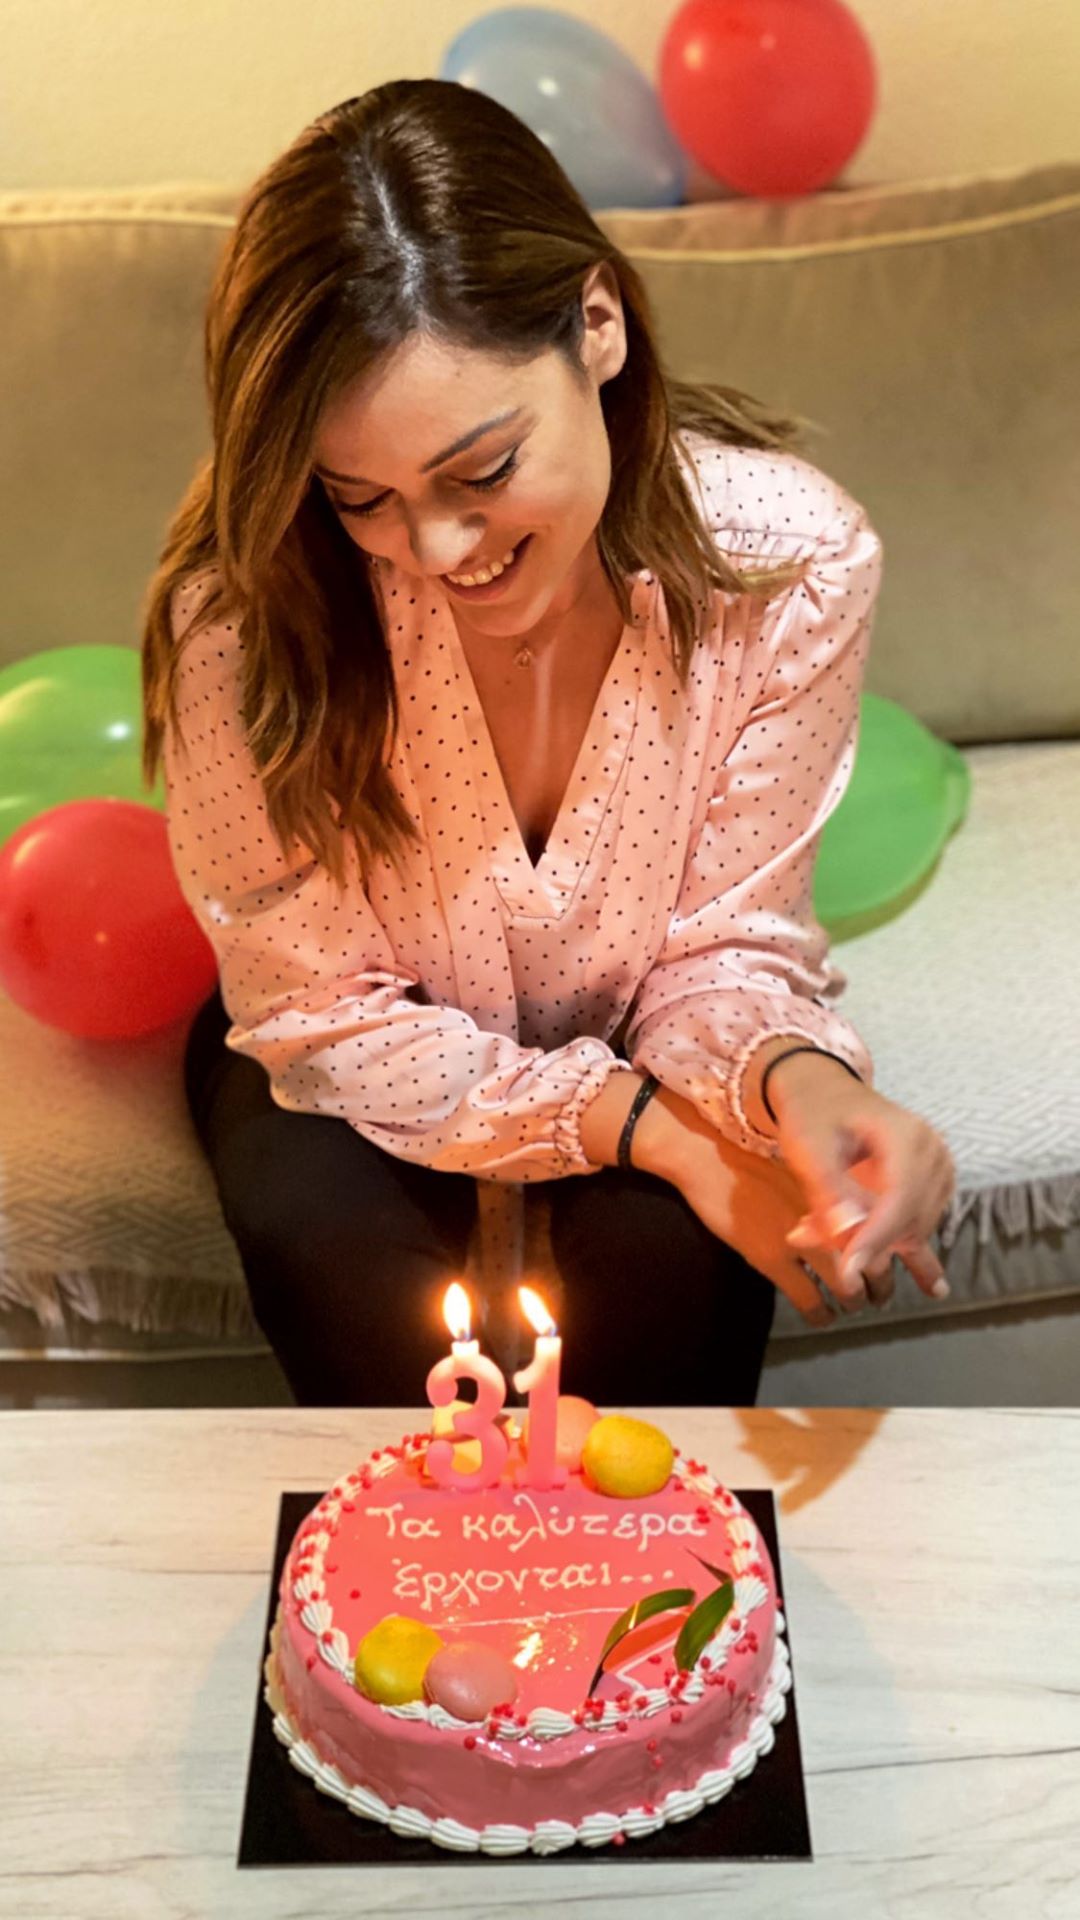 Γενέθλια για τη Μπάγια Αντωνοπούλου: Το μήνυμα με νόημα πάνω στην τούρτα και ο αριθμός των κεριών! (εικόνες)